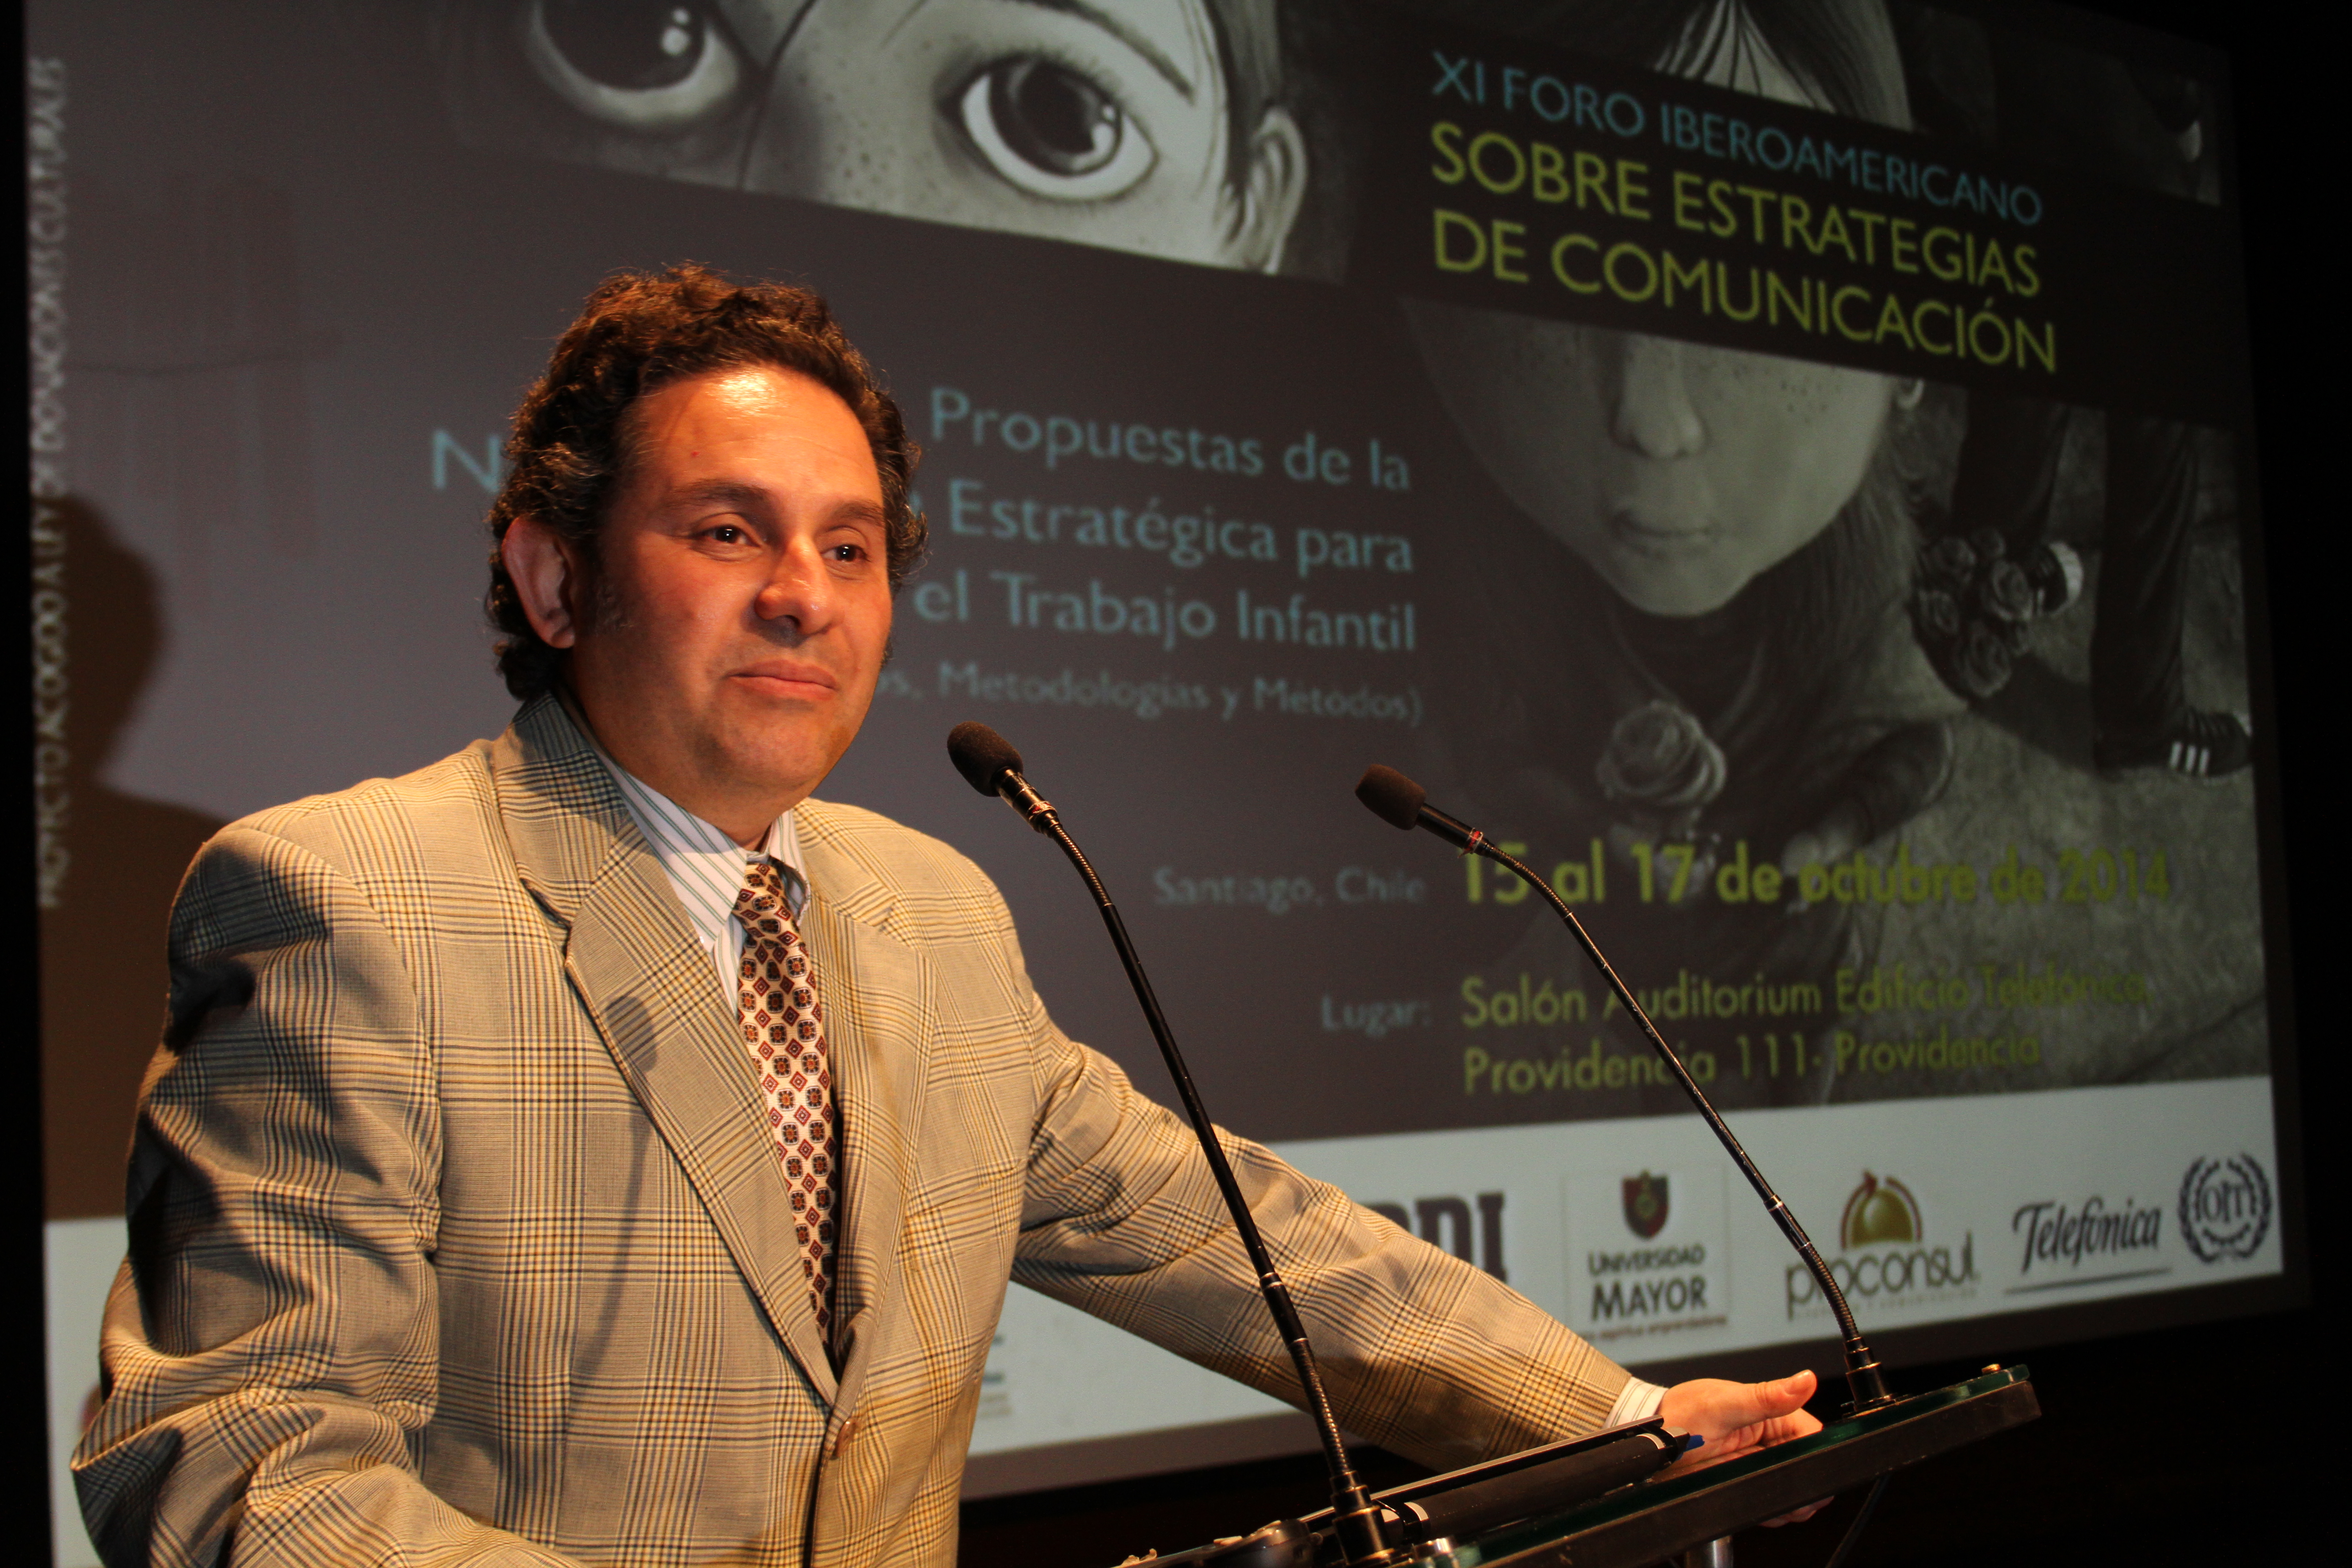 Dr. Raúl Herrera Echenique nuevo Presidente de FISEC durante su intervención en el XI Foro